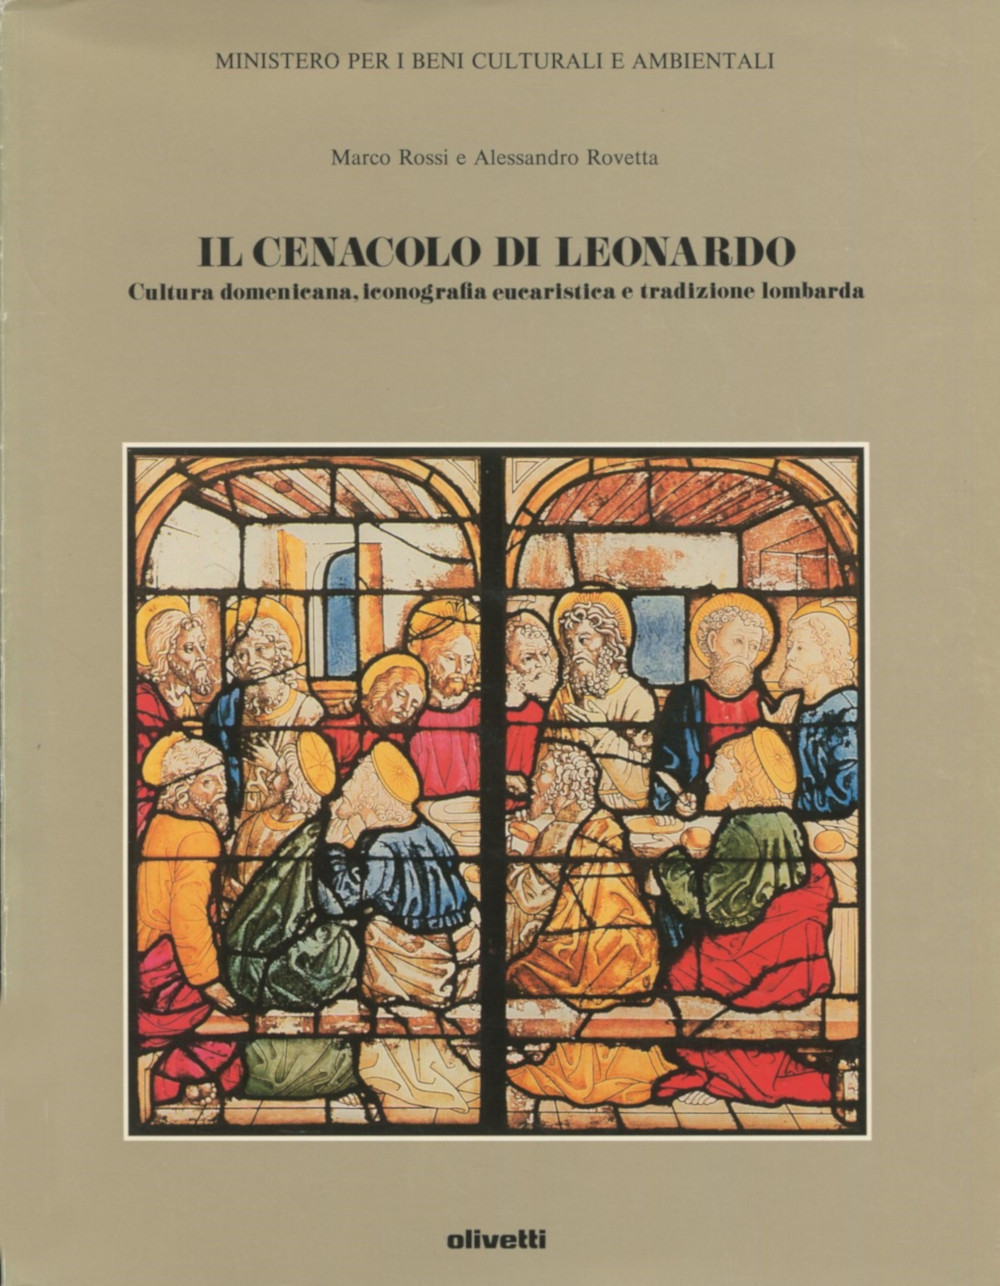 Il Cenacolo di Leonardo (‘Leonardo da Vinci’s “The Last Supper”‘)